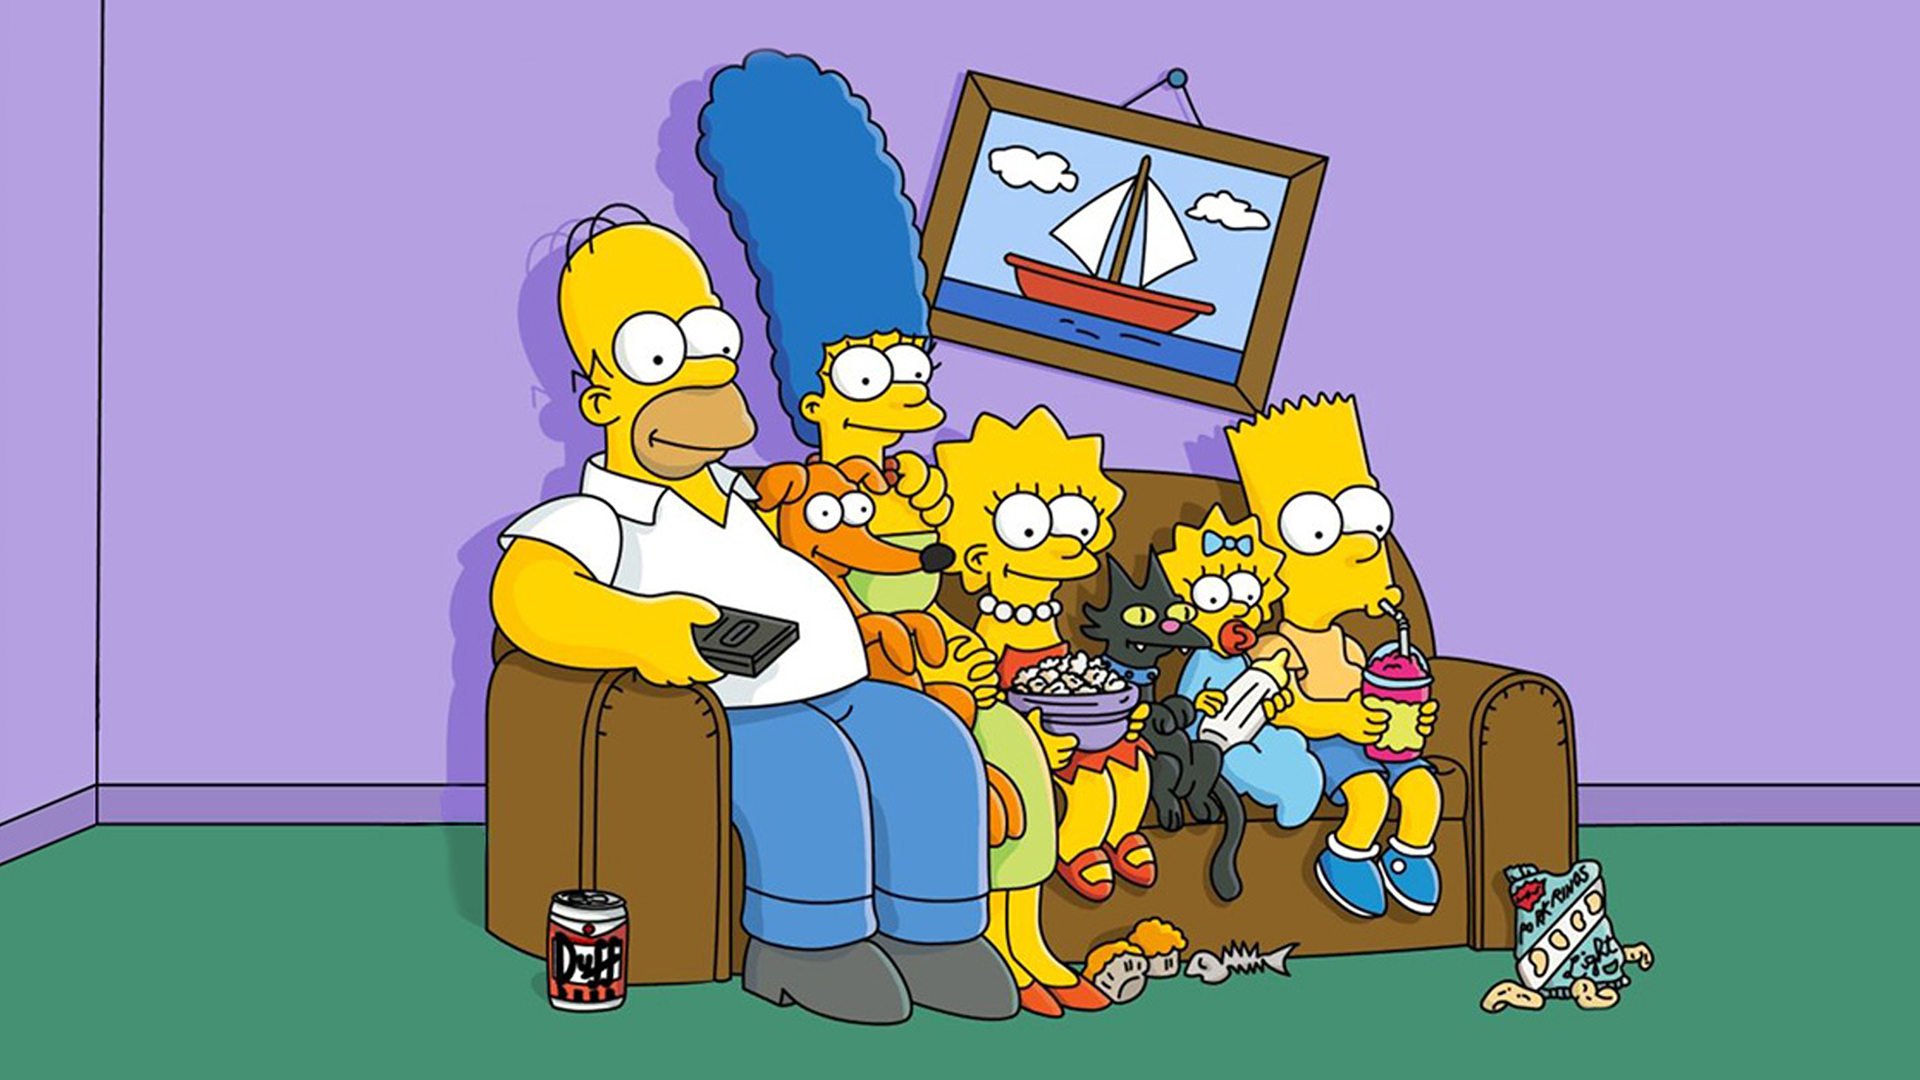 Rachat de Fox par Disney : bientôt la fin des Simpson ?